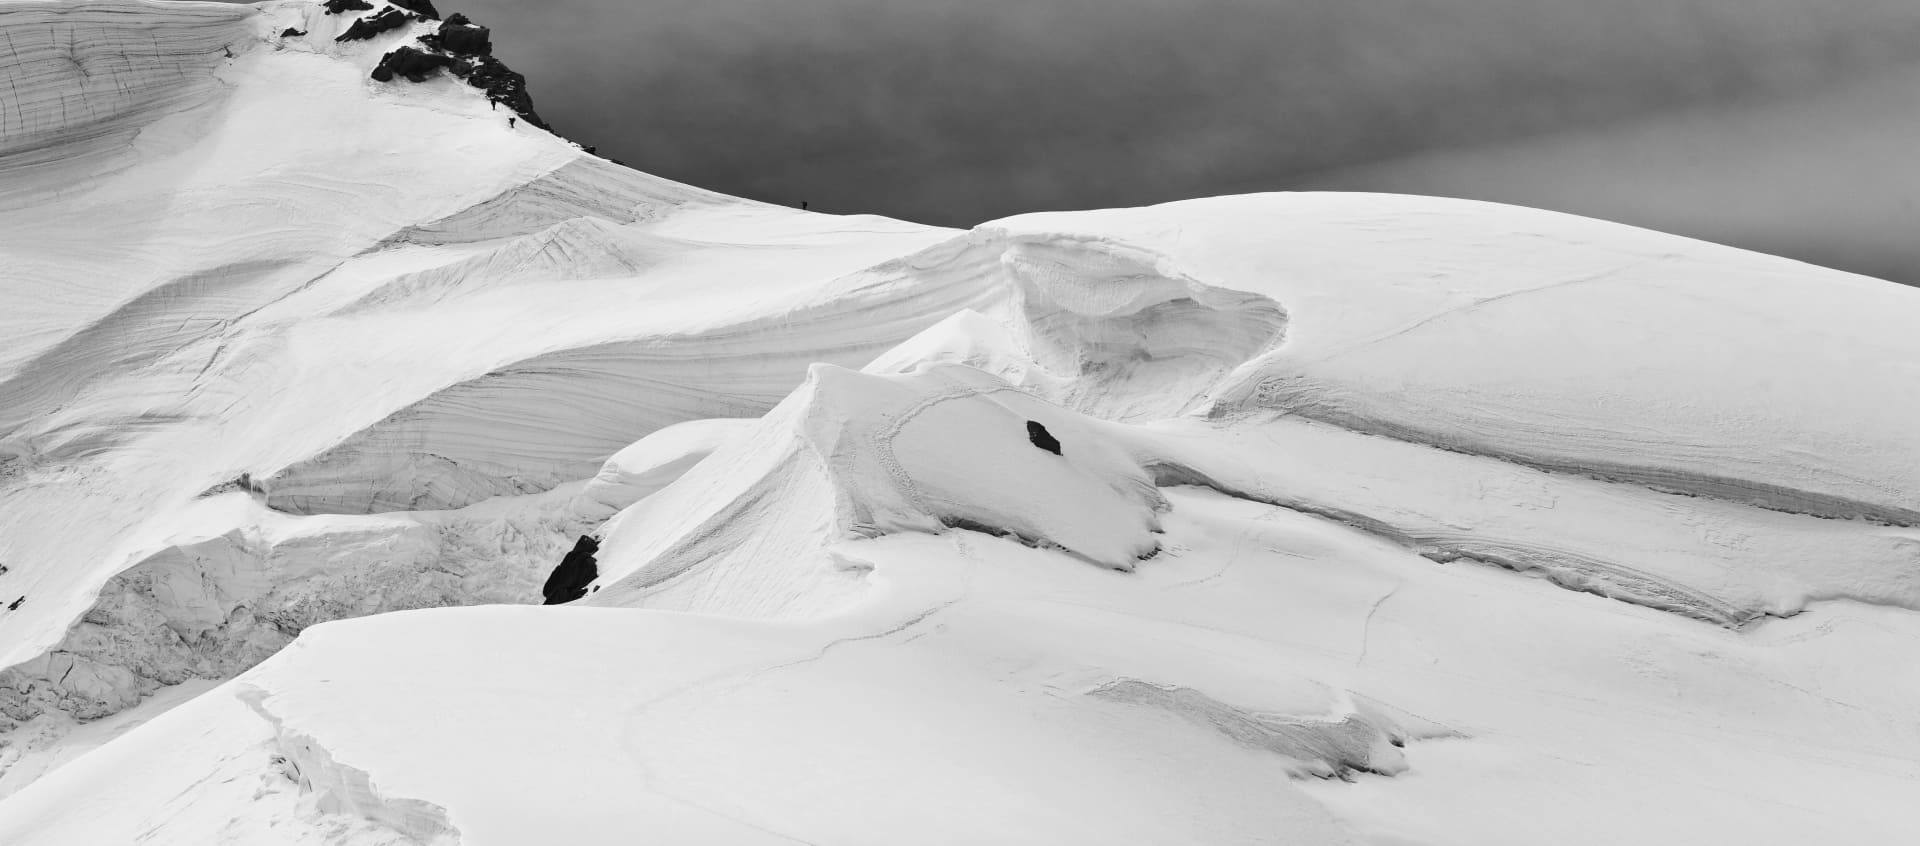 montanha coberta de neve com caminhantes subindo em uma linha